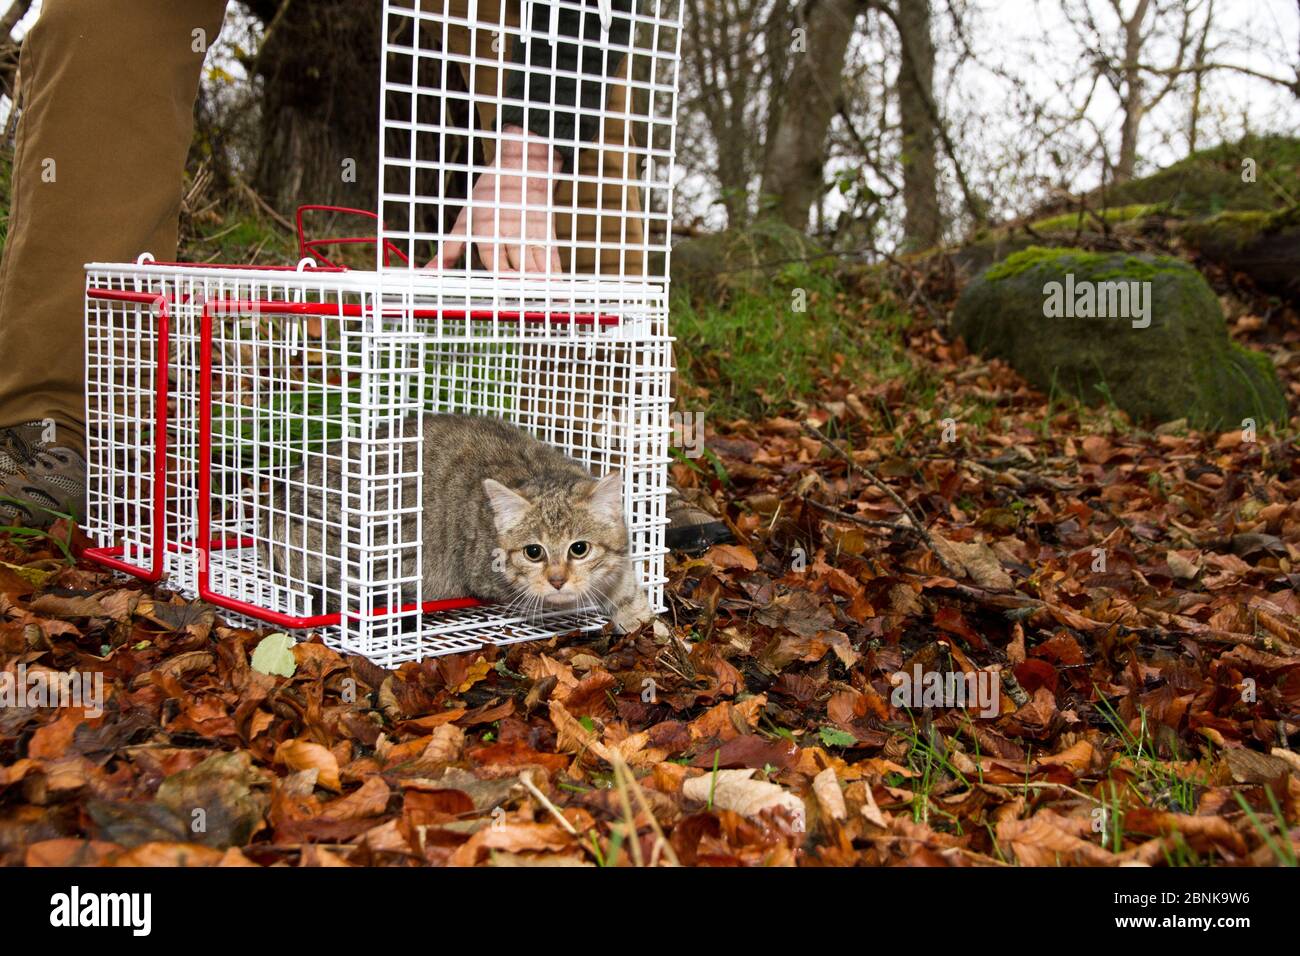 Personne libérant un jeune hybride de chat sauvage écossais (Felis silvestris grampia) de chat de croix (Felis catus) après le neutering, Aberdeenshire, Scotl Banque D'Images